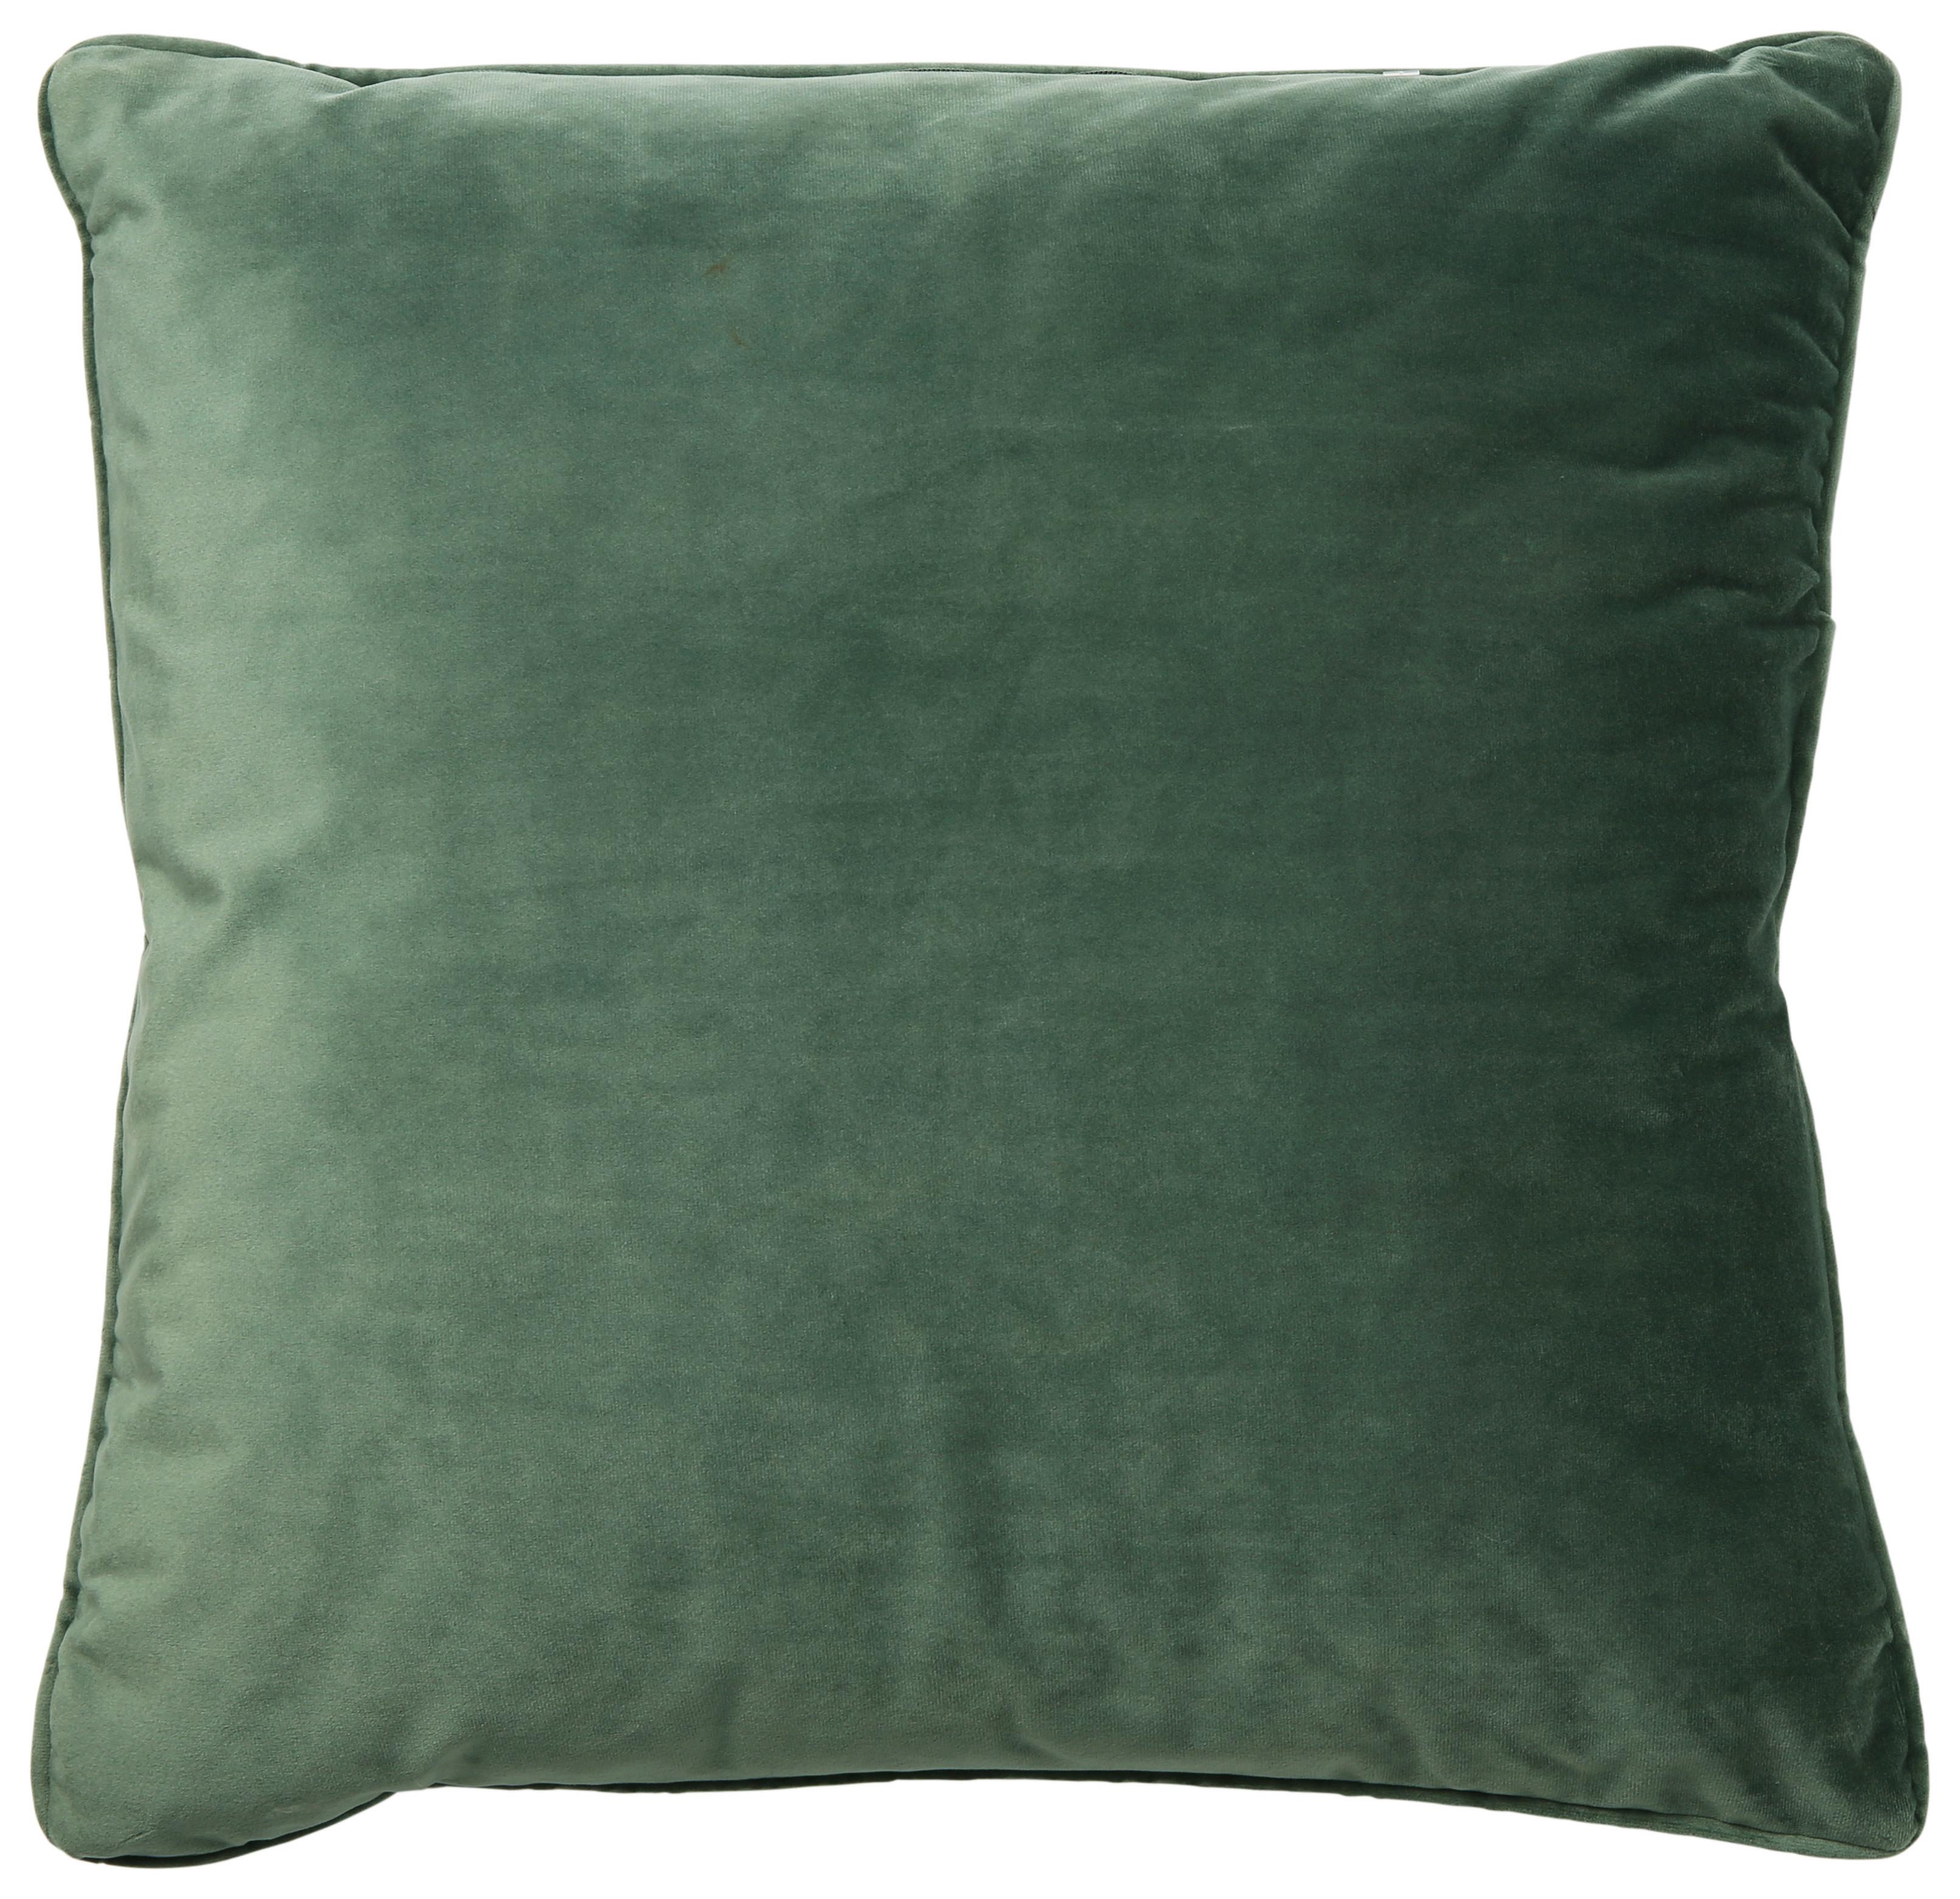 Dekoračný Vankúš Viola, 45/45 Cm, Zelená - zelená, Konvenčný, textil (45/45cm) - Premium Living